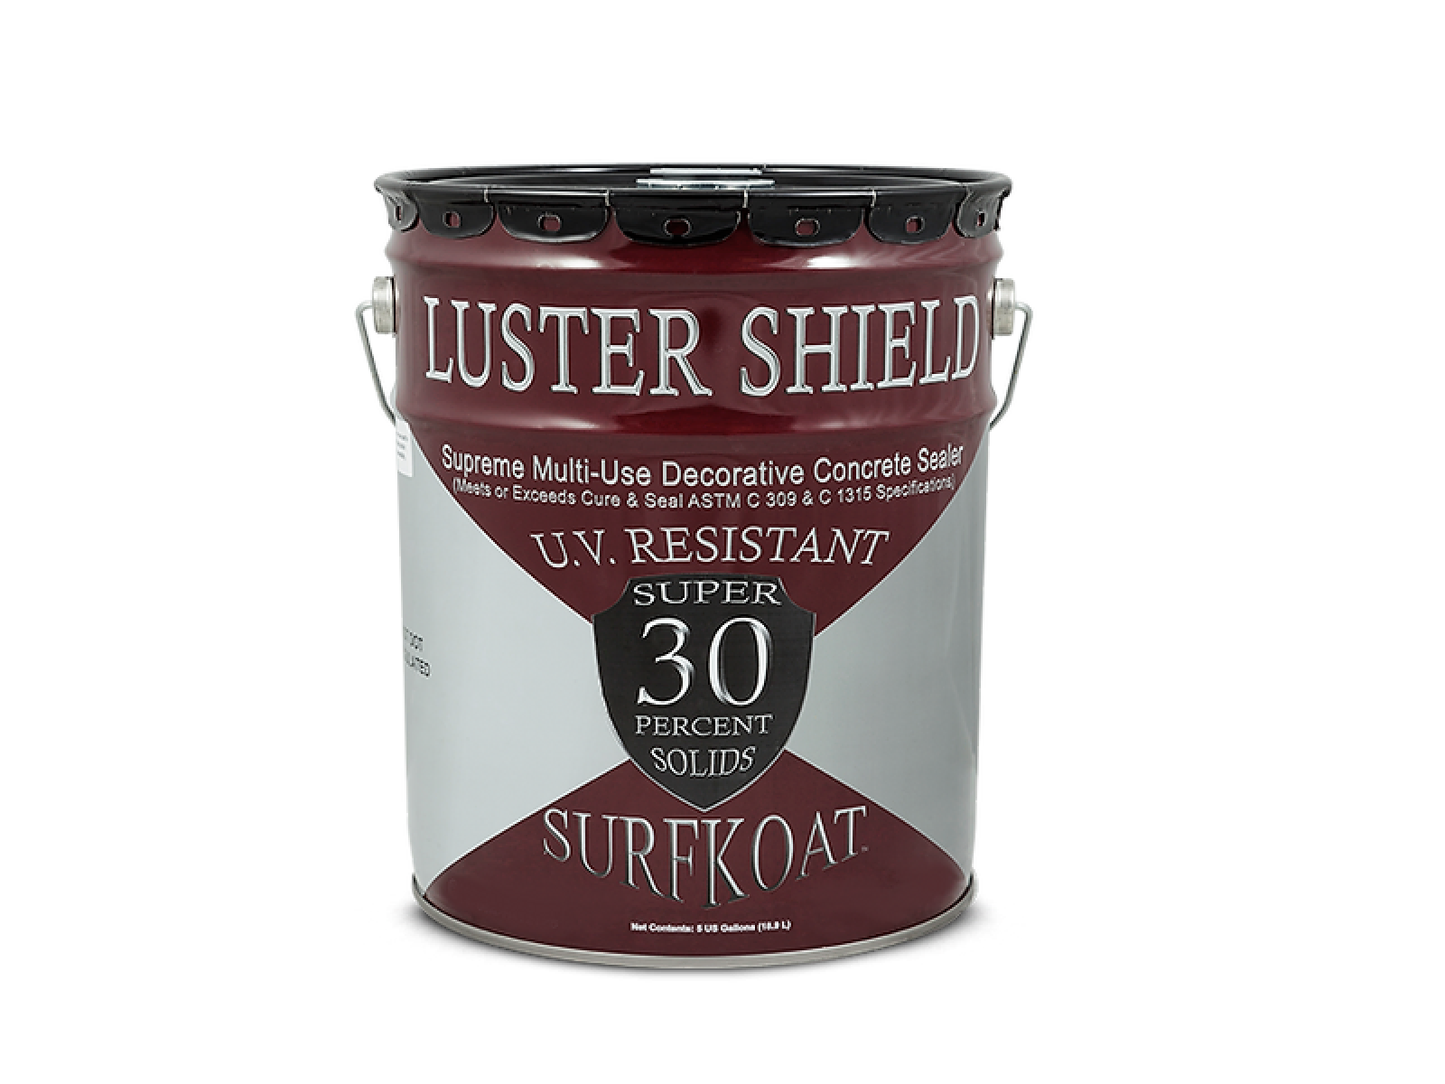 Super Luster Shield 350 VOC 5 Gallon